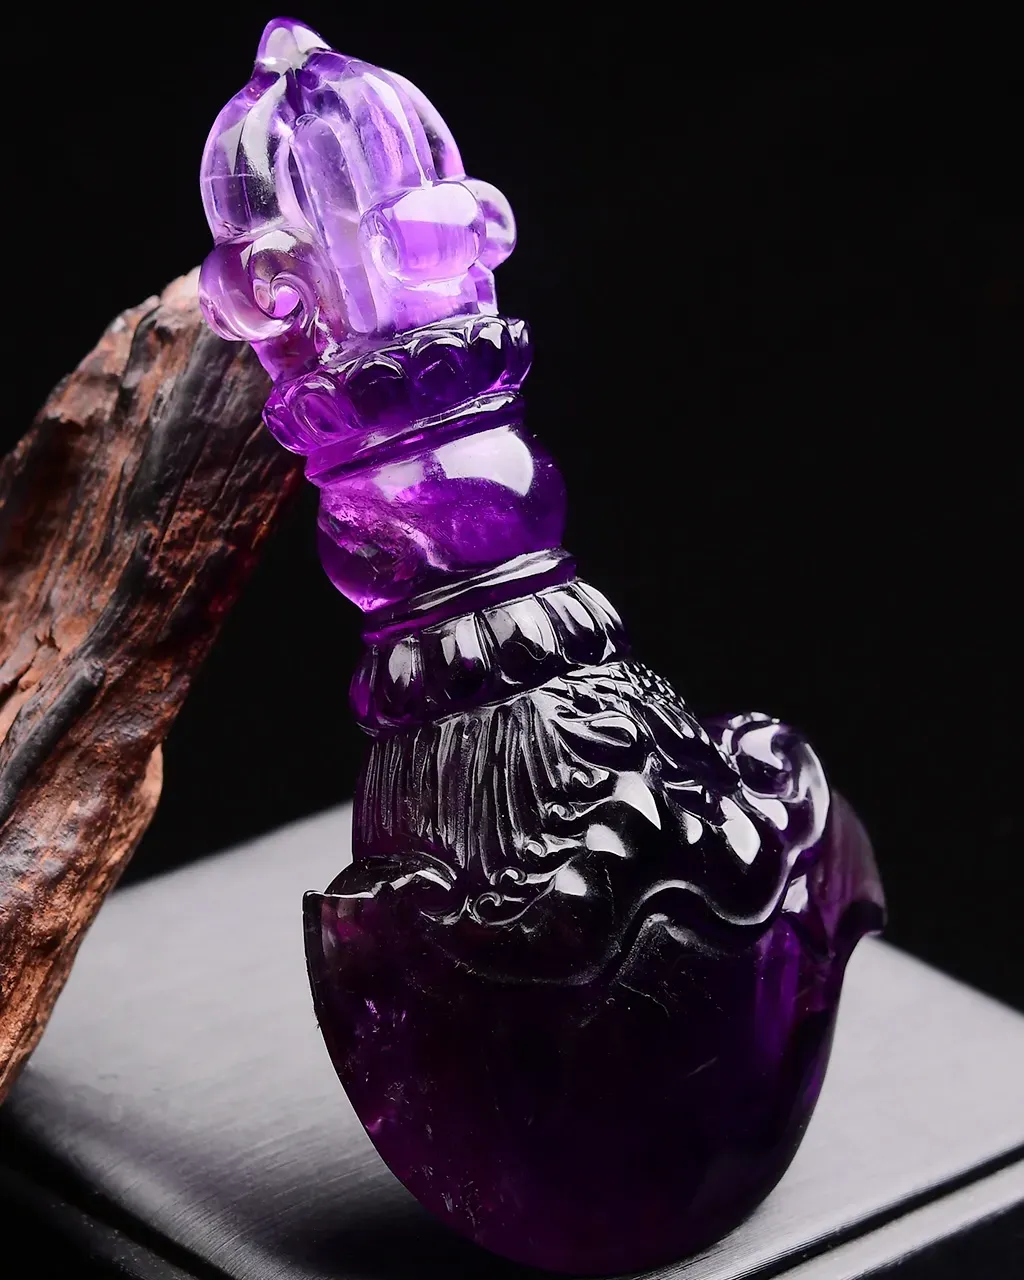 天然紫水晶杵•金刚杵•金刚月刀摆件金刚月刀佛教八宝之一，拥有者顺顺利利保平安，大师镂空雕刻，难度高